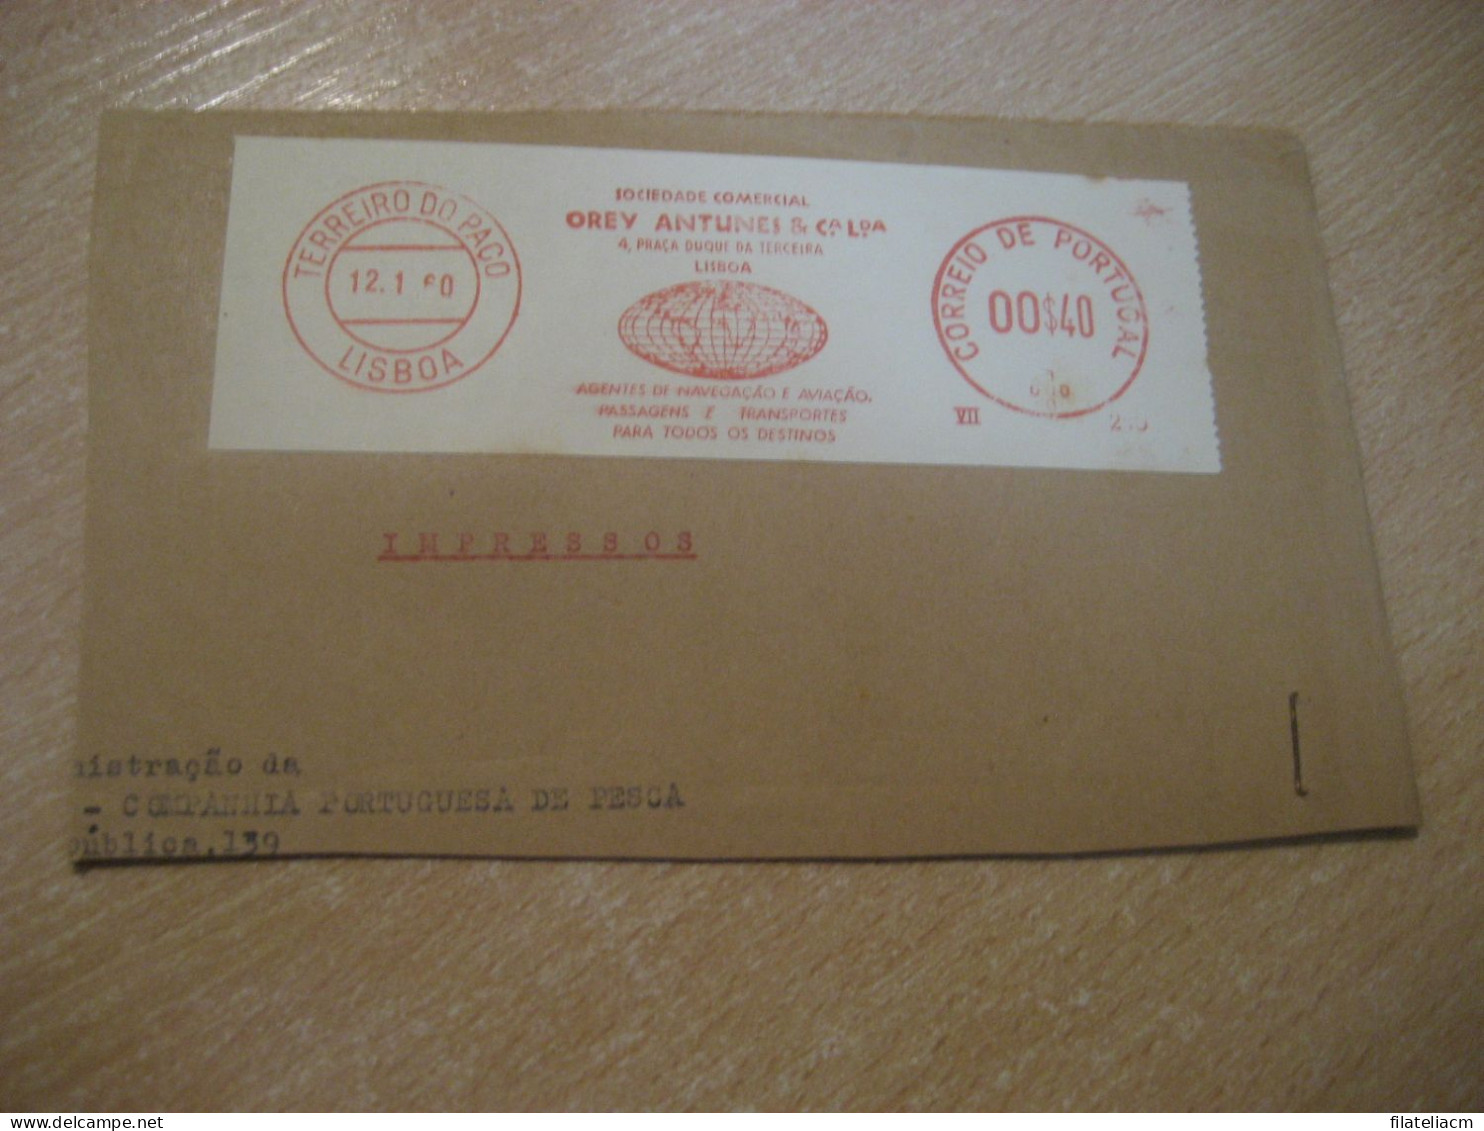 LISBOA 1960 Orey Antunes Agentes De Navegaçao E Aviaçao Meter Mail Cancel Cut Cuted Cover PORTUGAL - Cartas & Documentos